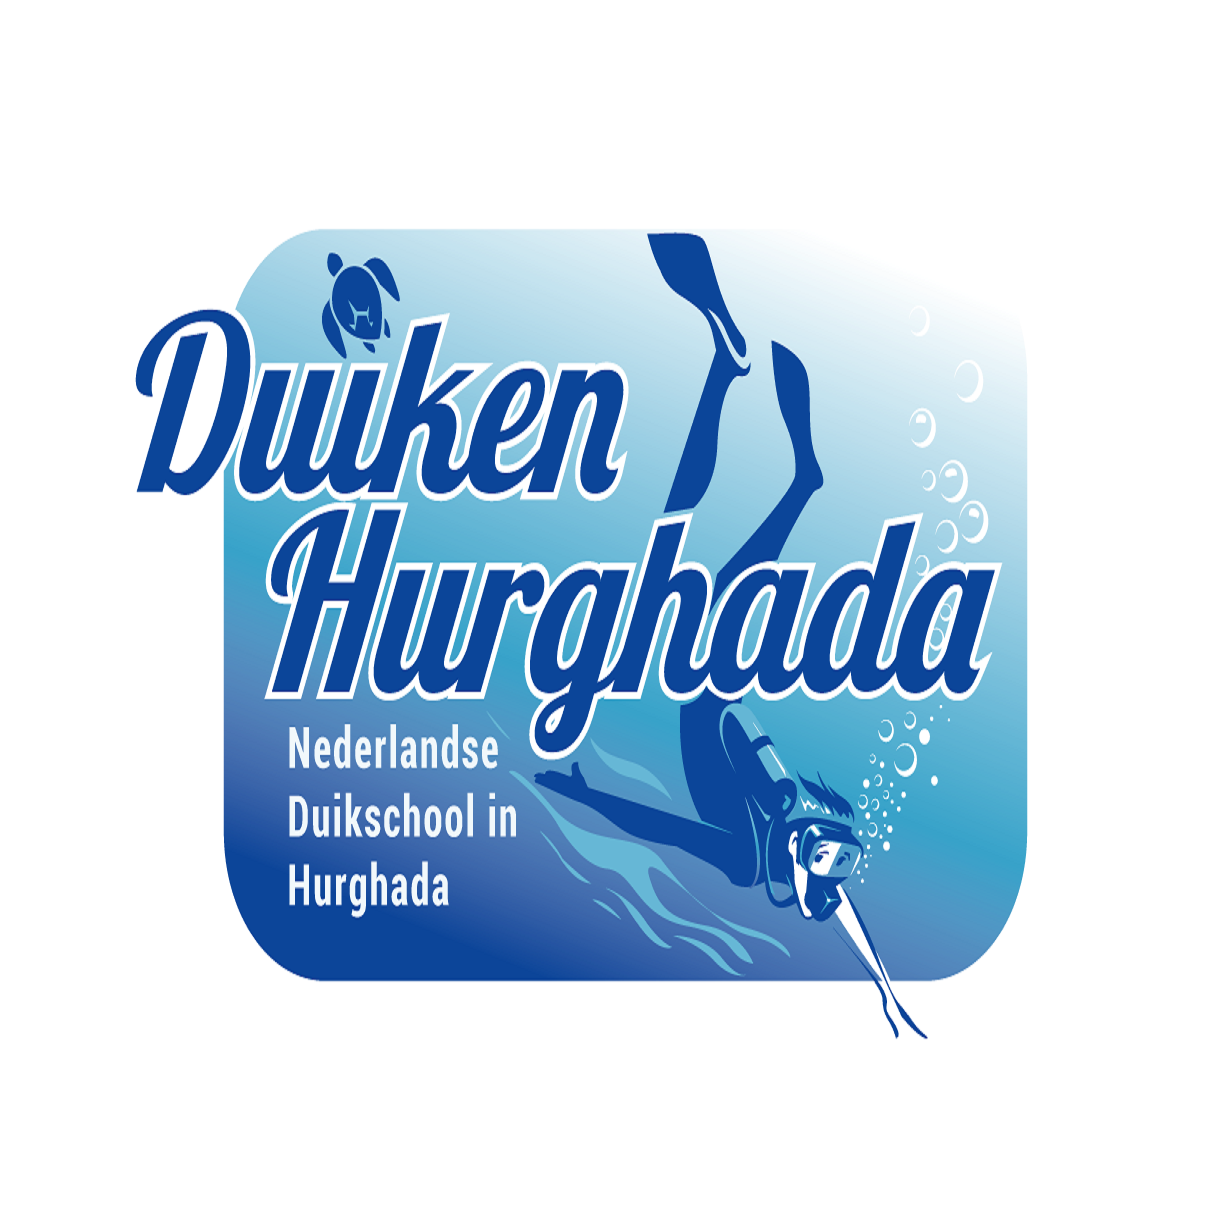 Duiken Hurghada - Nederlandse Duikschool In Hurghada, Duikcursus